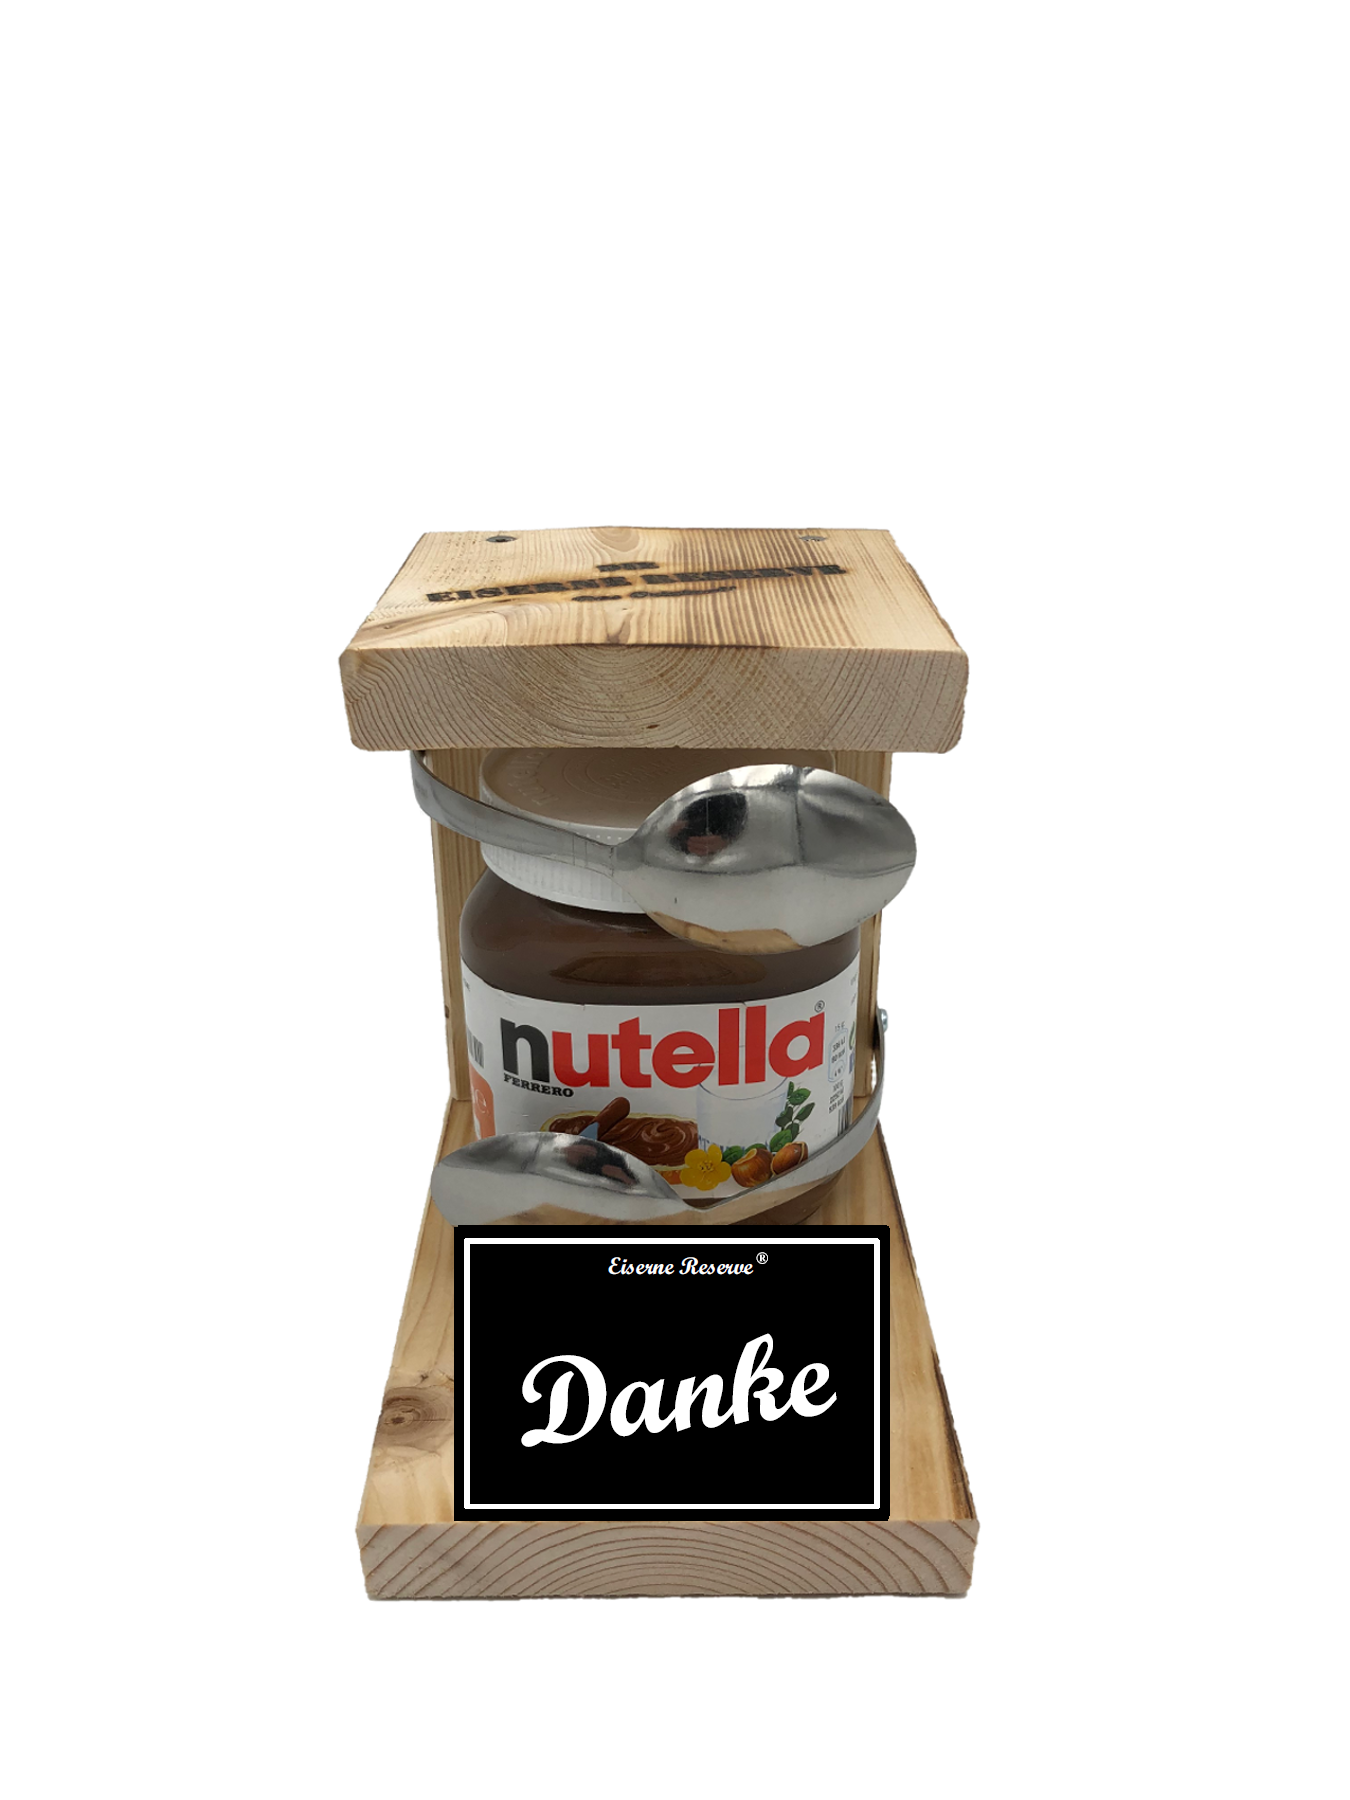 Danke Löffel Nutella Geschenk - Die Nutella Geschenkidee